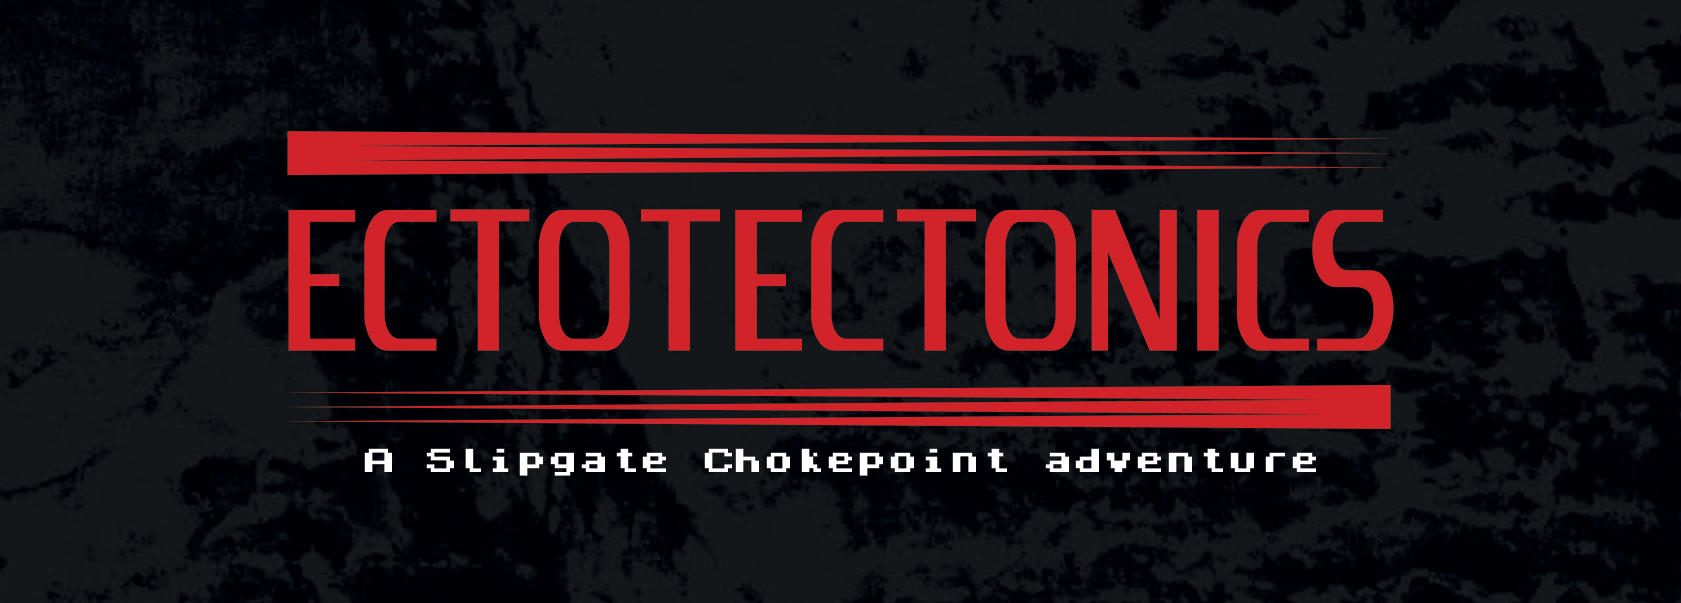 Ectotectonics: A Slipgate Chokepoint adventure